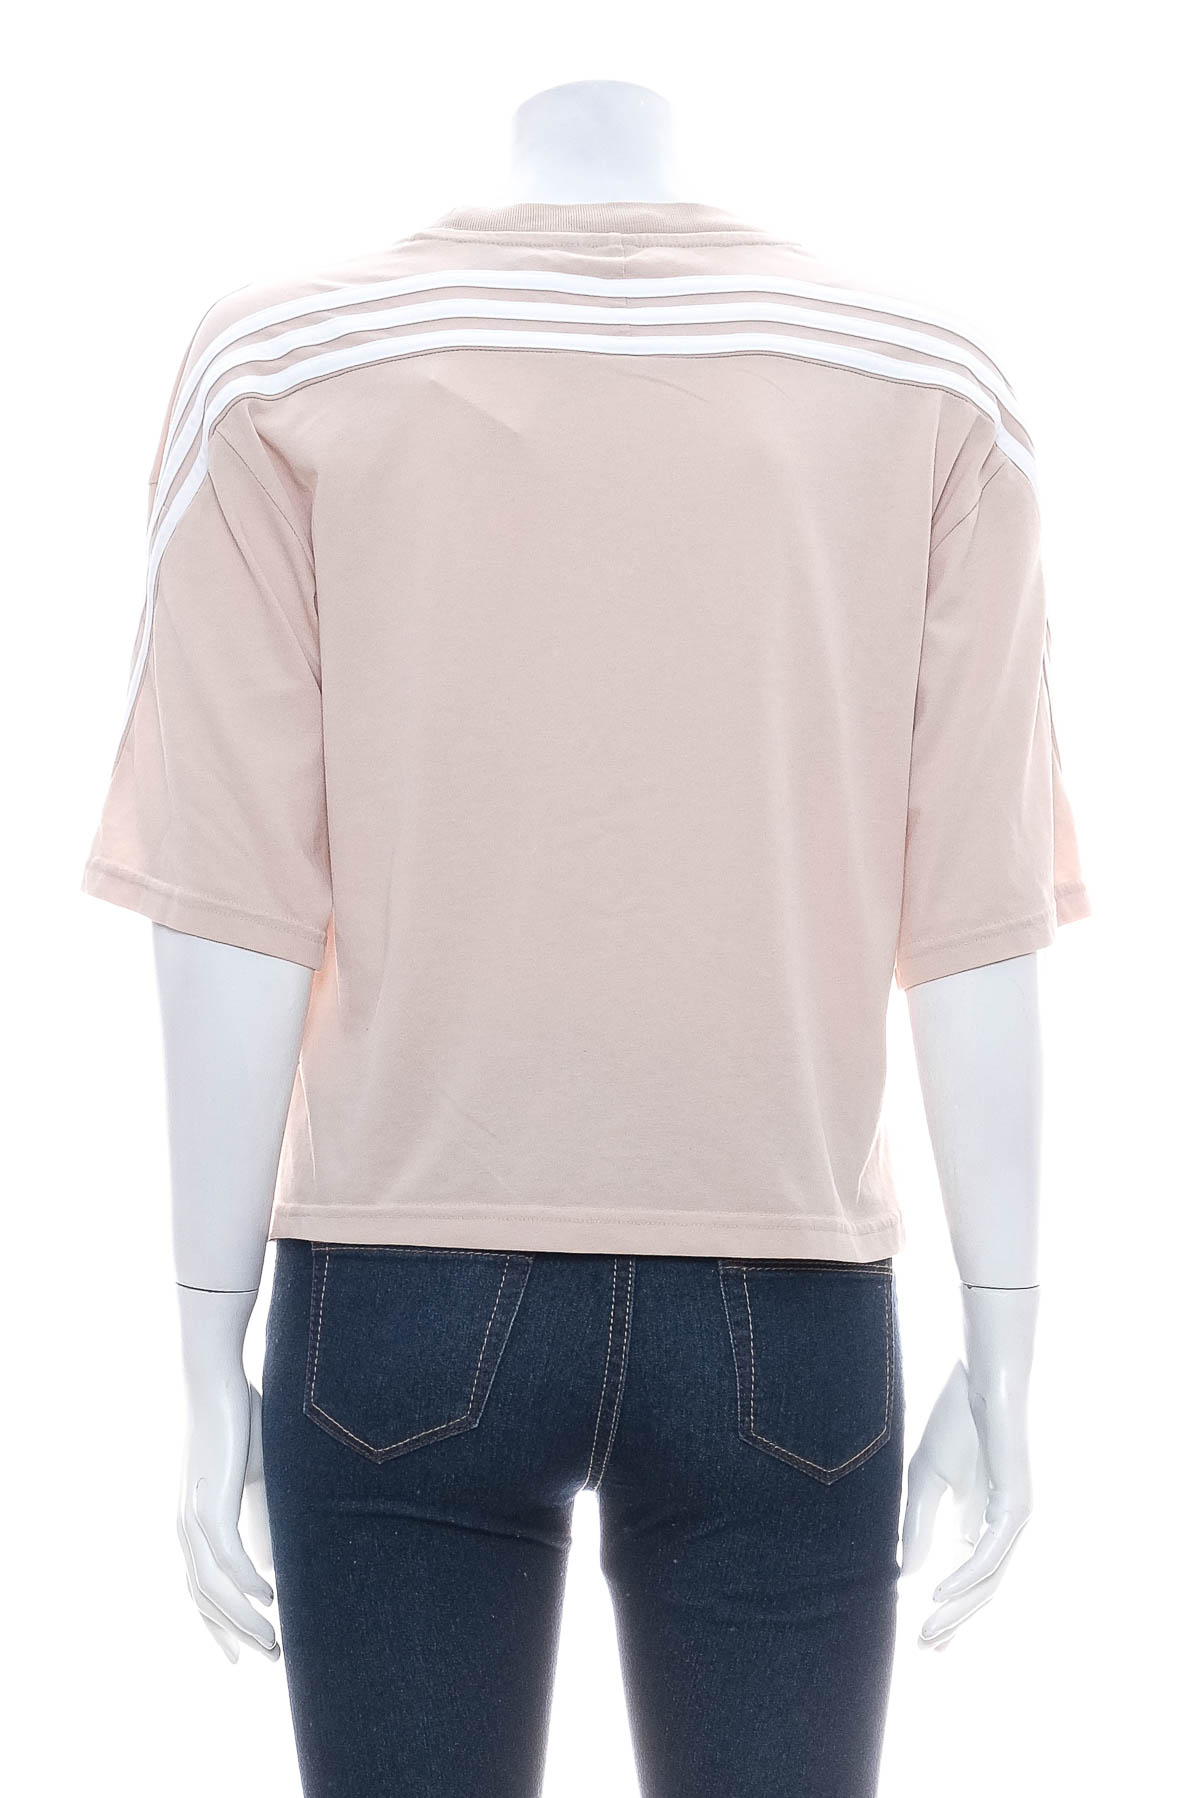 Koszulka damska - Adidas - 1